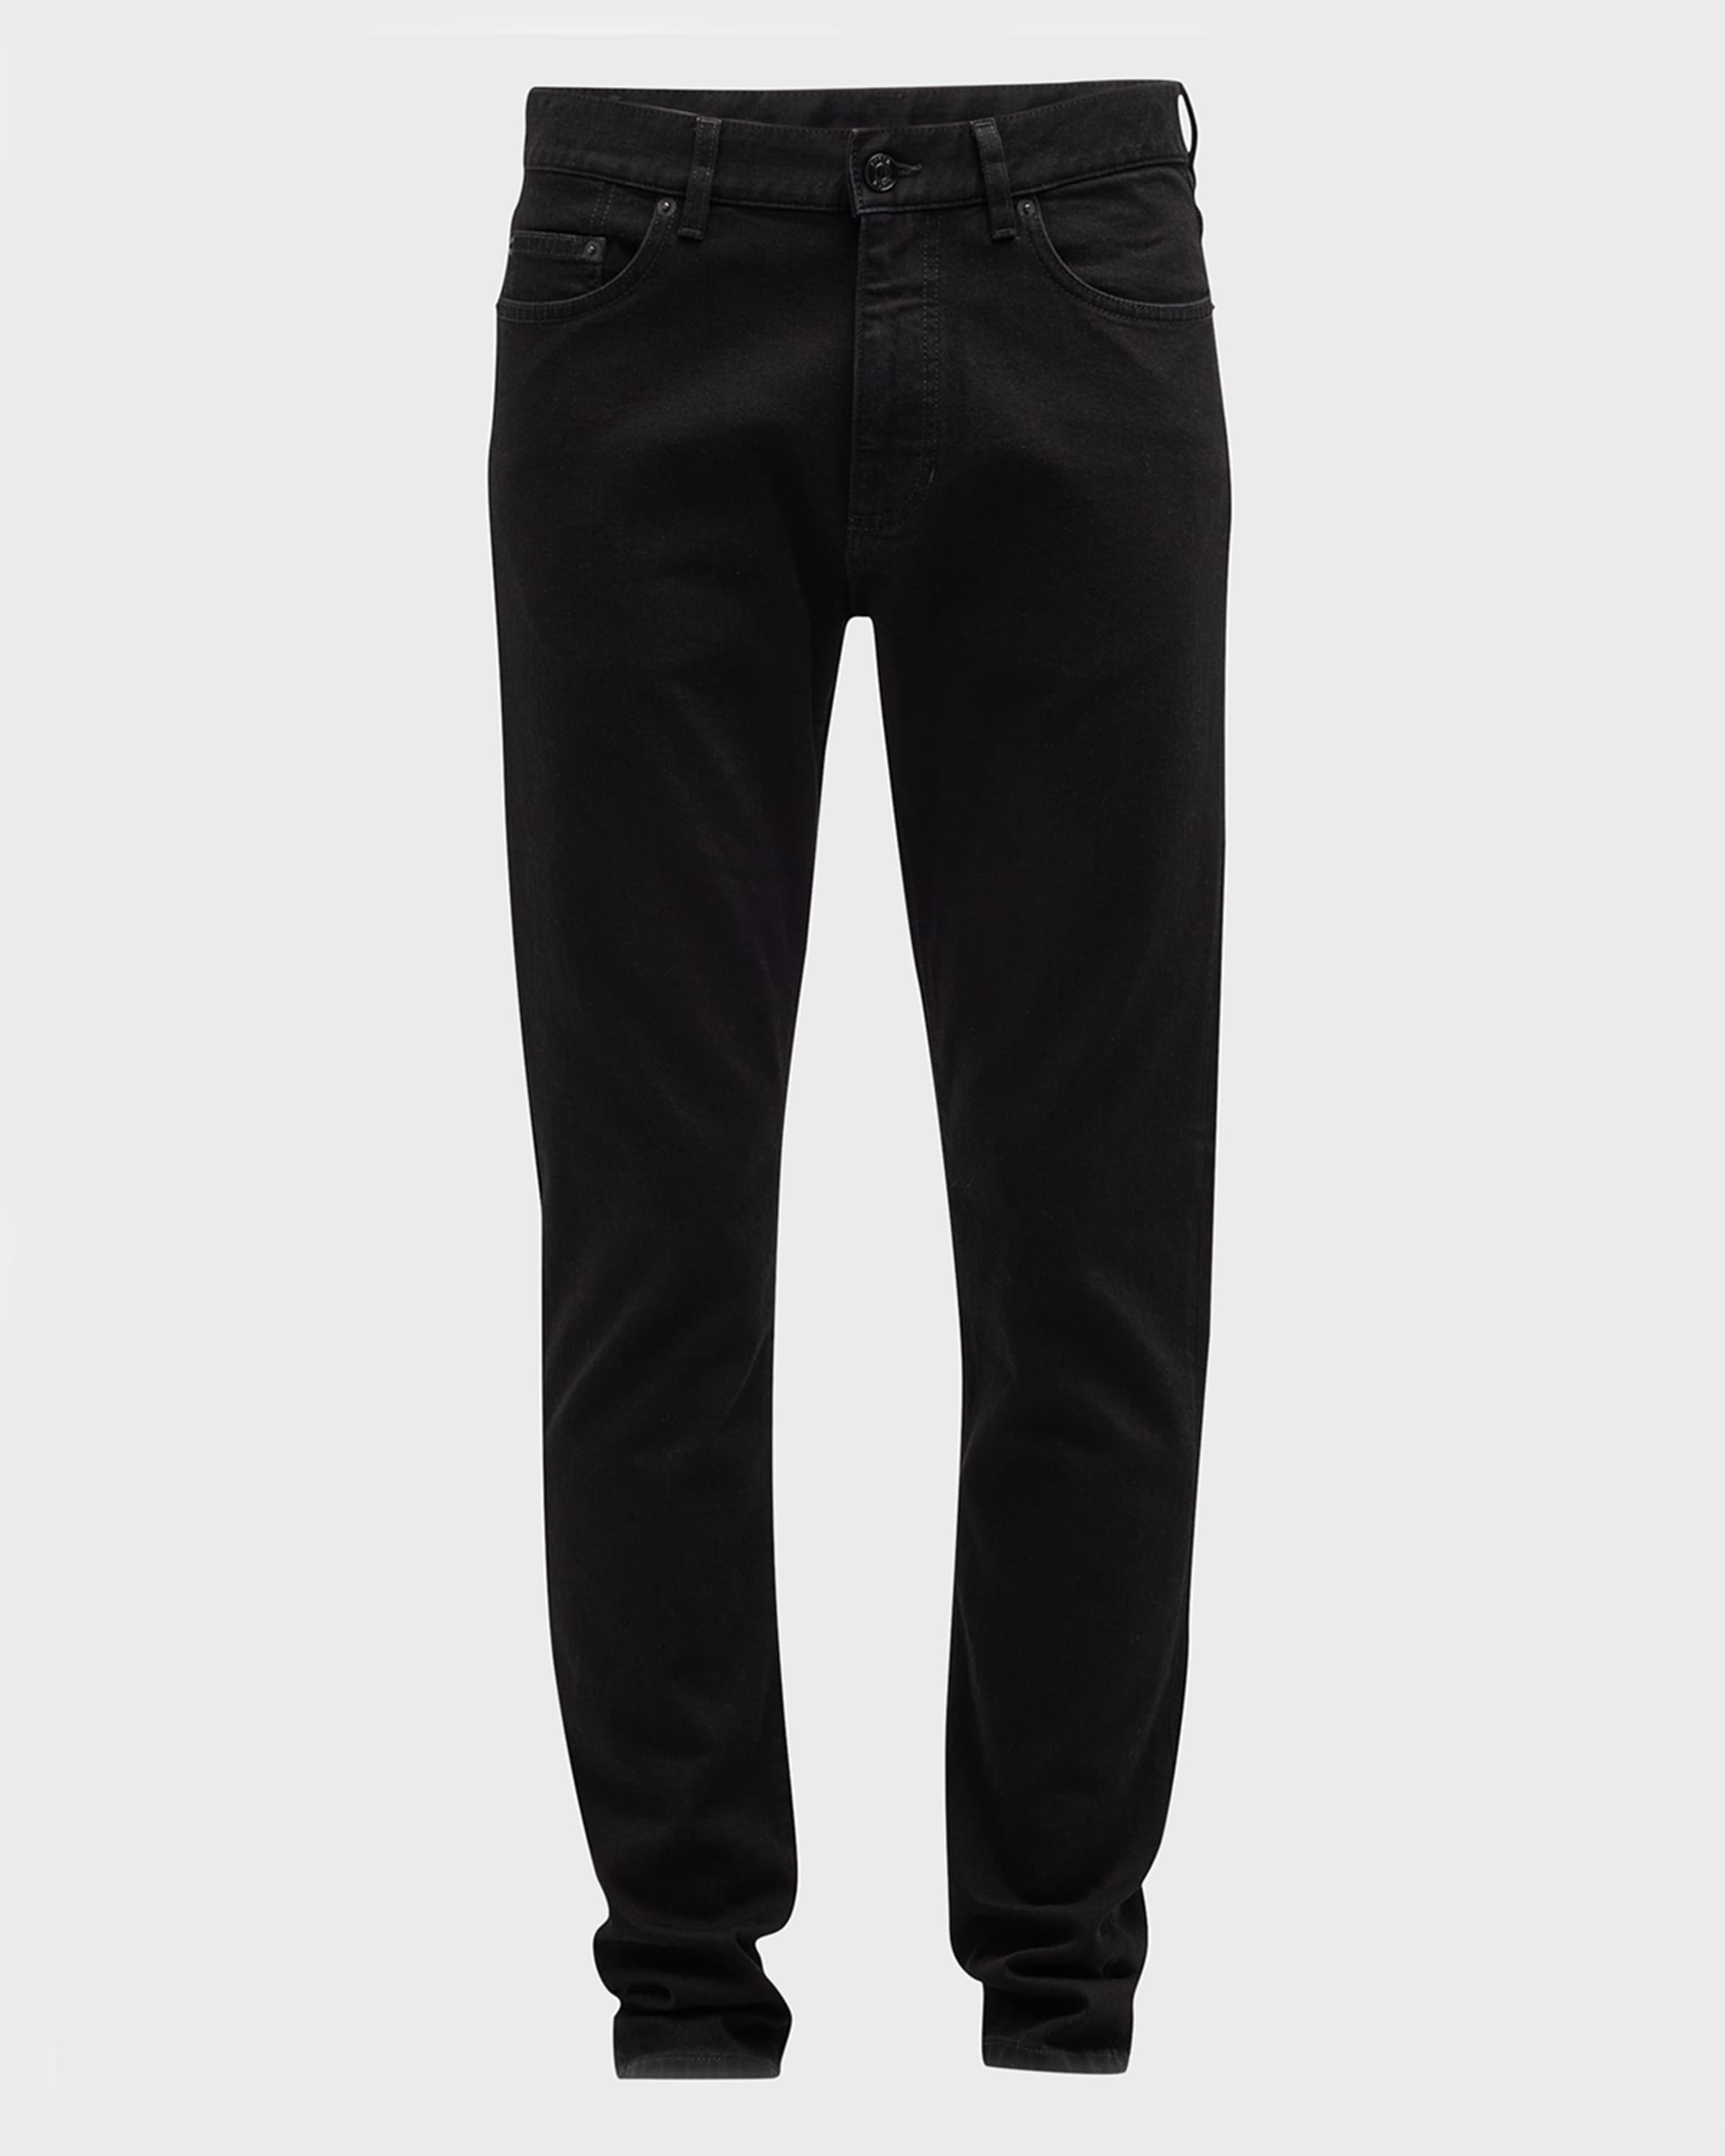 Men's 5-Pocket Black Wash Denim Jeans - 1